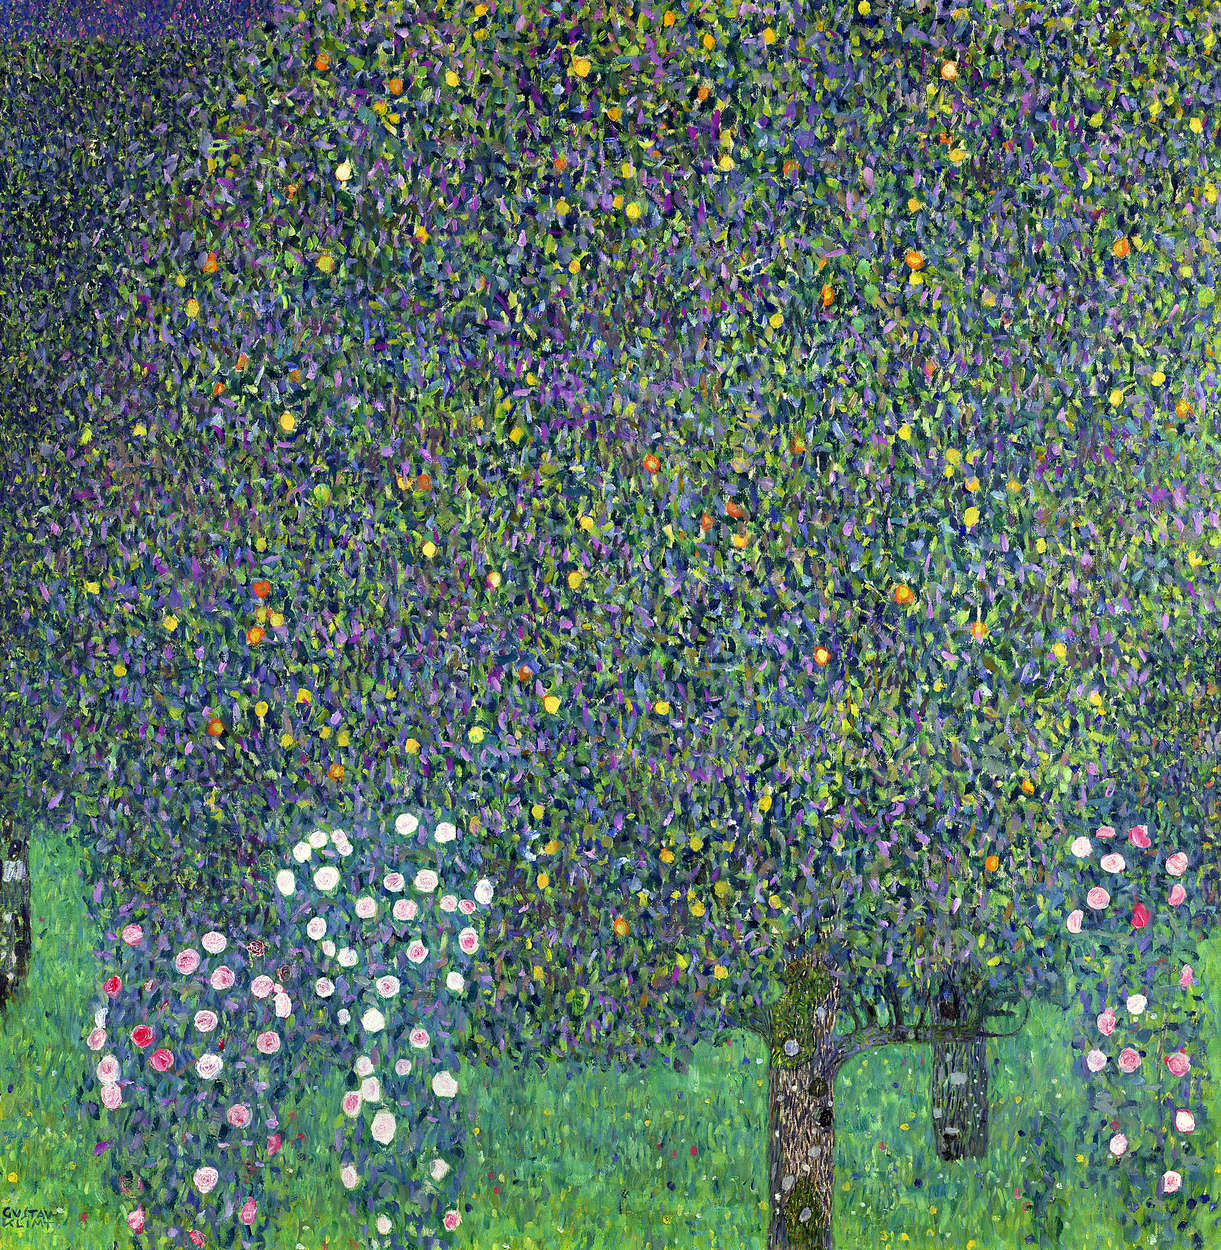             Papier peint panoramique "Roses sous les arbresum" de Gustav Klimt
        